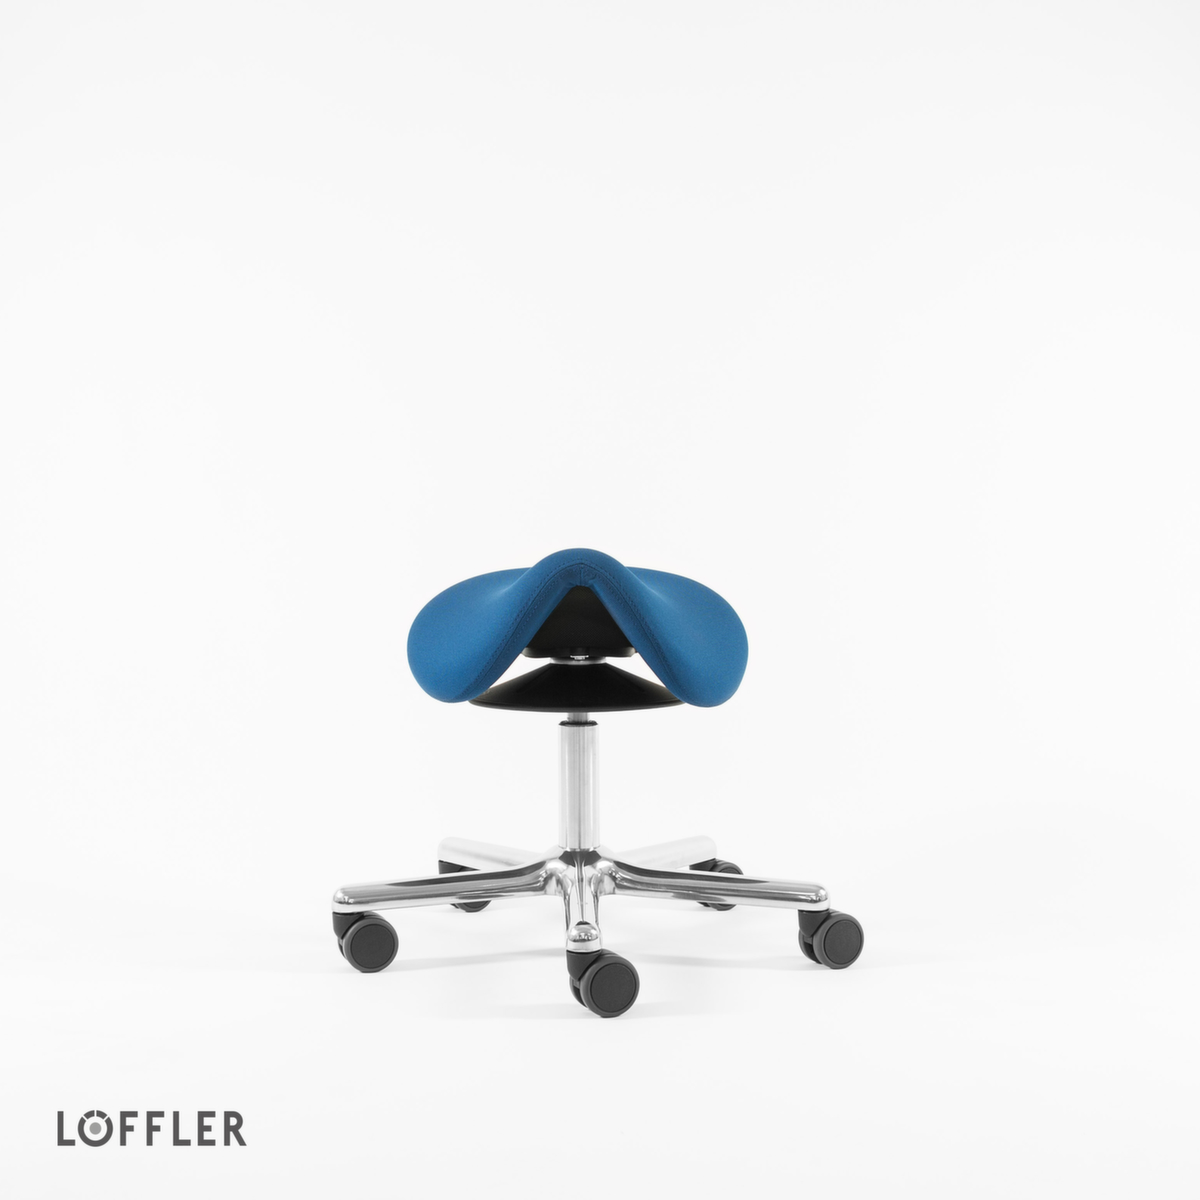 Löffler Tabouret selle de cheval Sedlo avec réglage en hauteur, assise bleu, roulettes  ZOOM